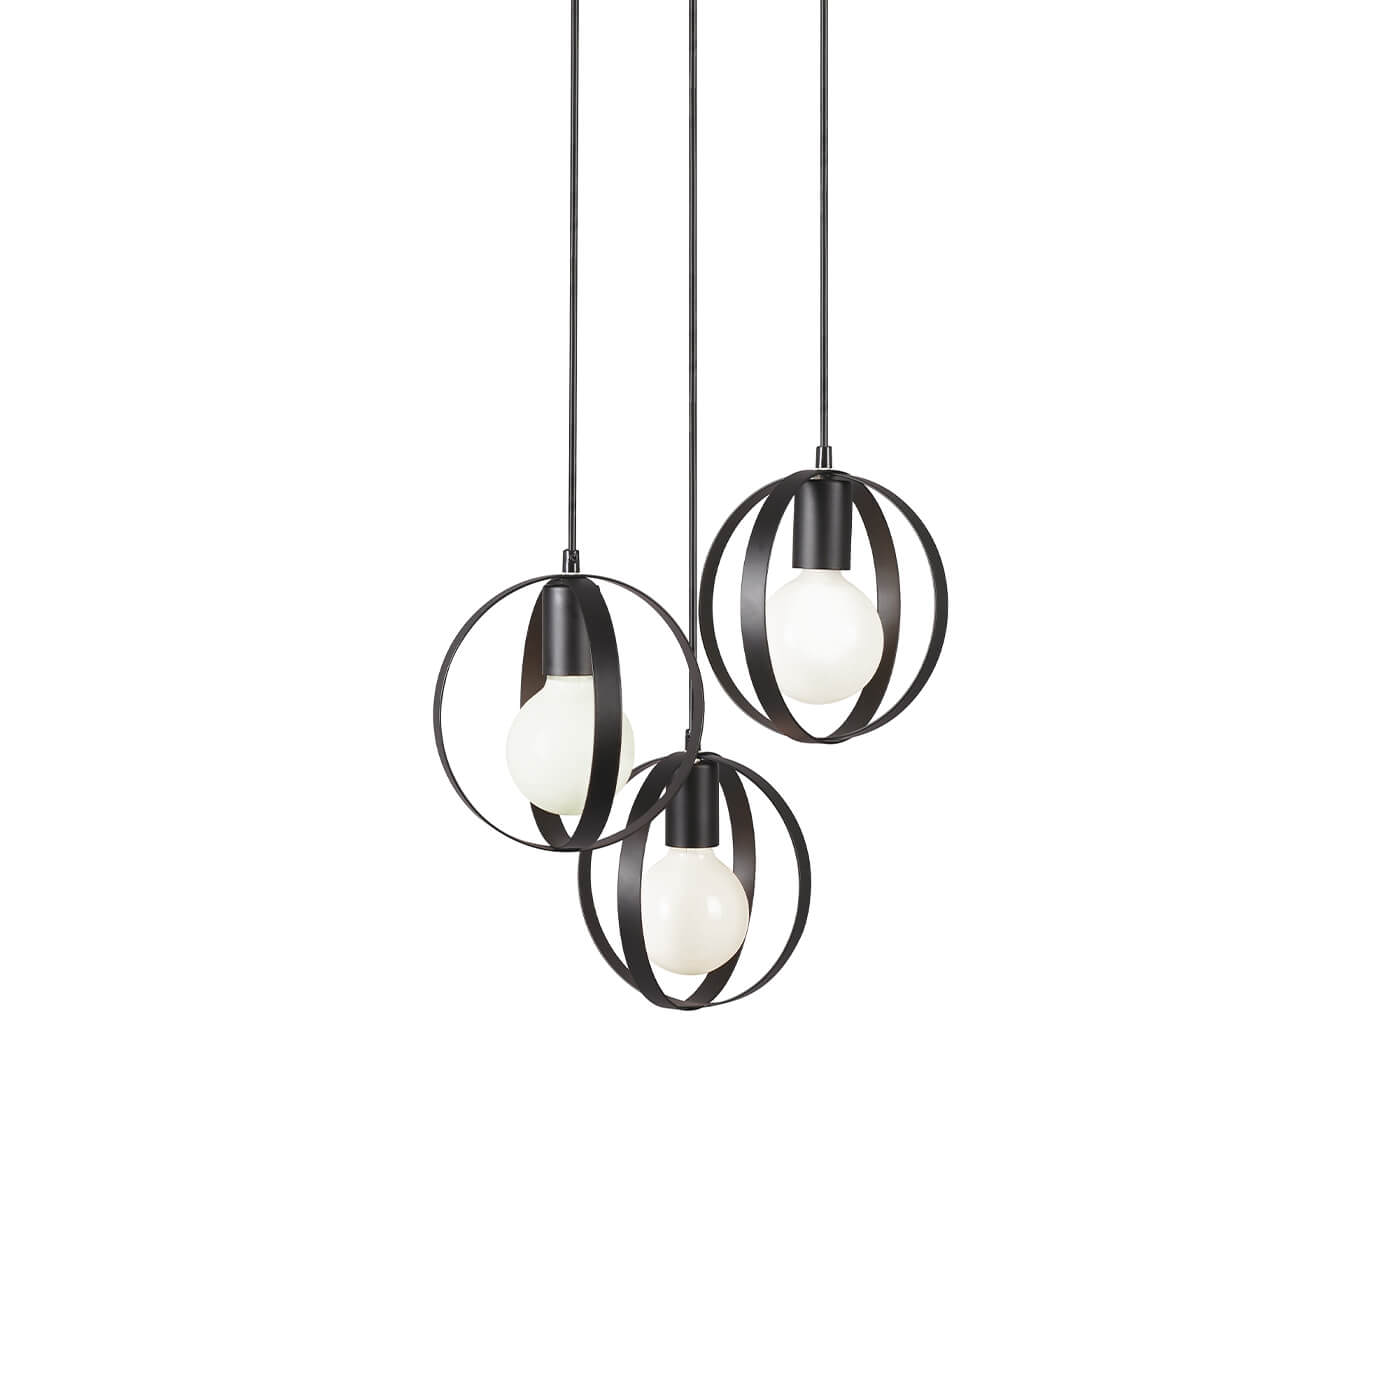 Cauti o lampa suspendata neagra MALOU S3 din metal, design minimalist, elegant, pentru living, dining sau dormitor din colectia de lustre si candelabre Domicilio?